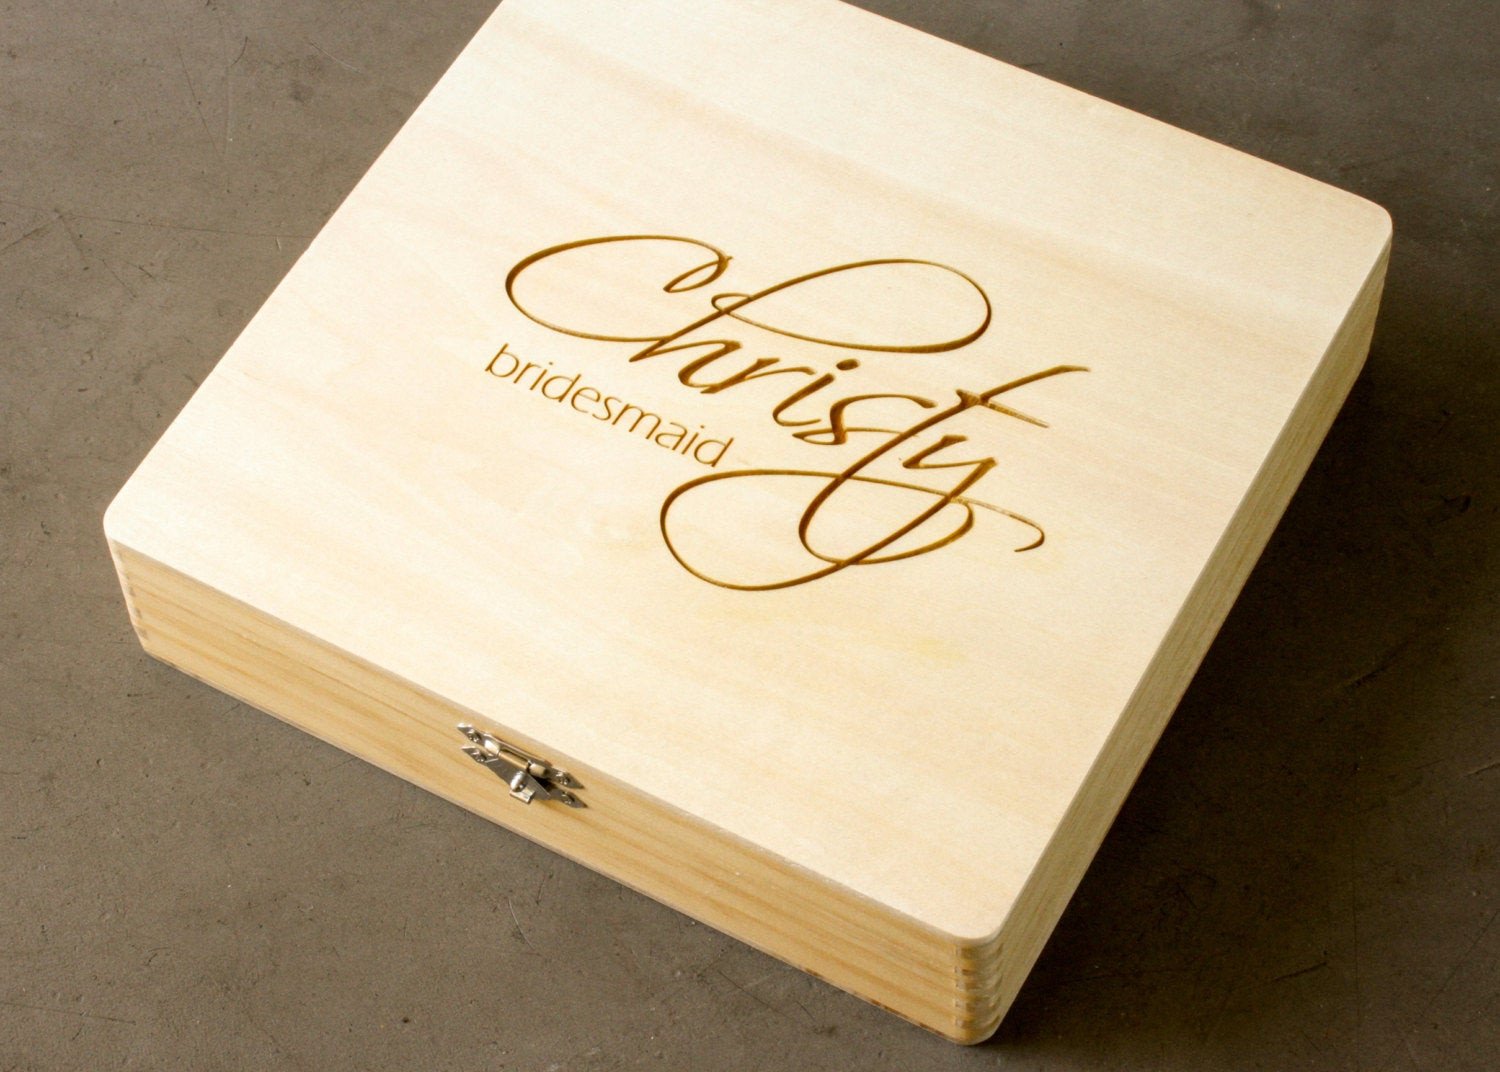 Holzkiste Hochzeit
 Hochzeit Briefkasten personalisierte Holzkiste graviert Box